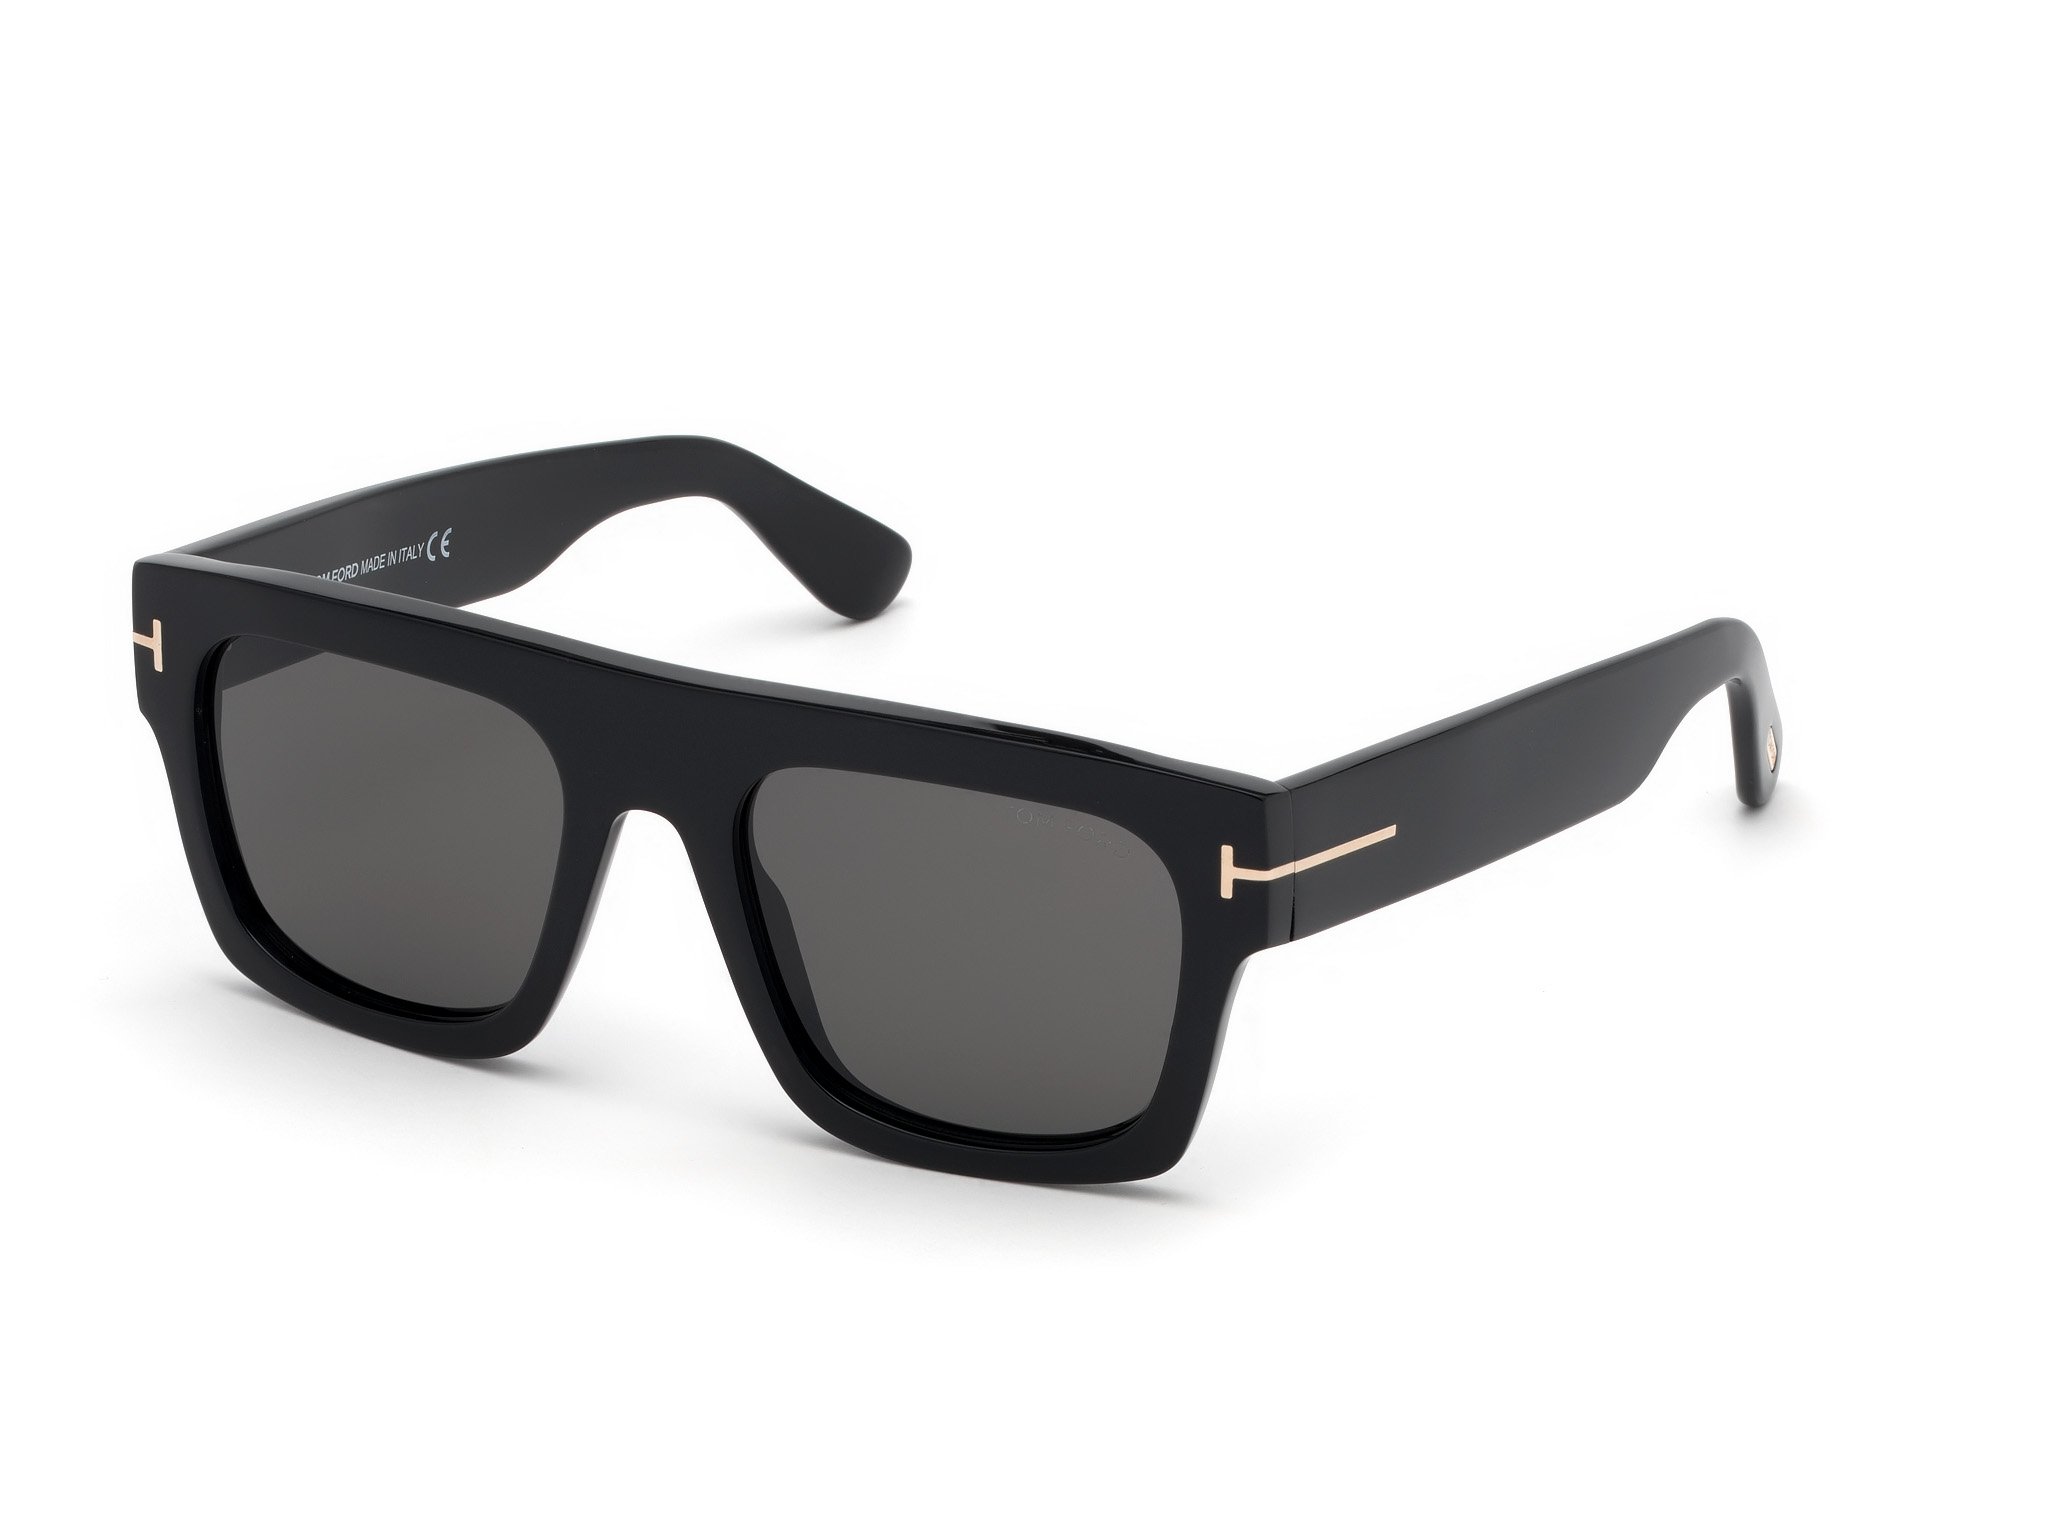 Das Bild zeigt die Sonnenbrille FT0711 der Marke Tom Ford in schwarz von der Seite.